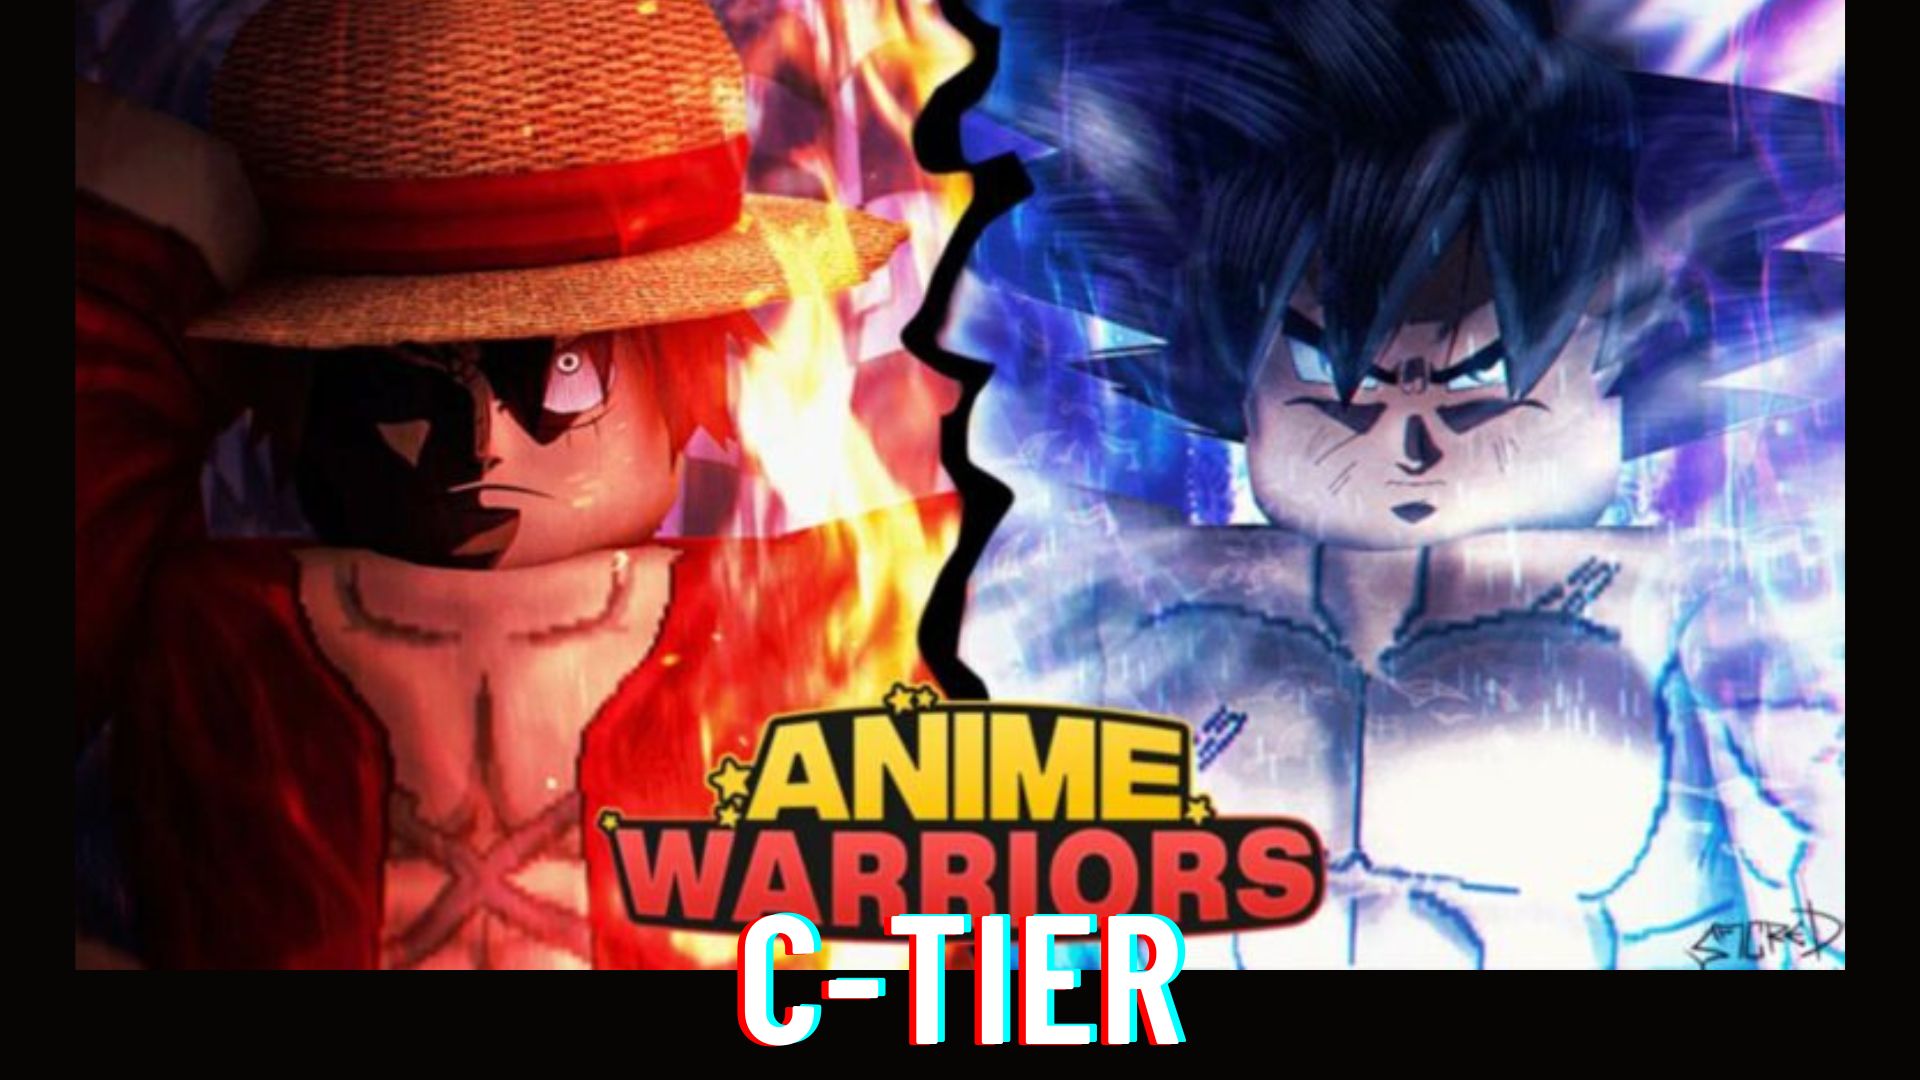 Anime warriors C